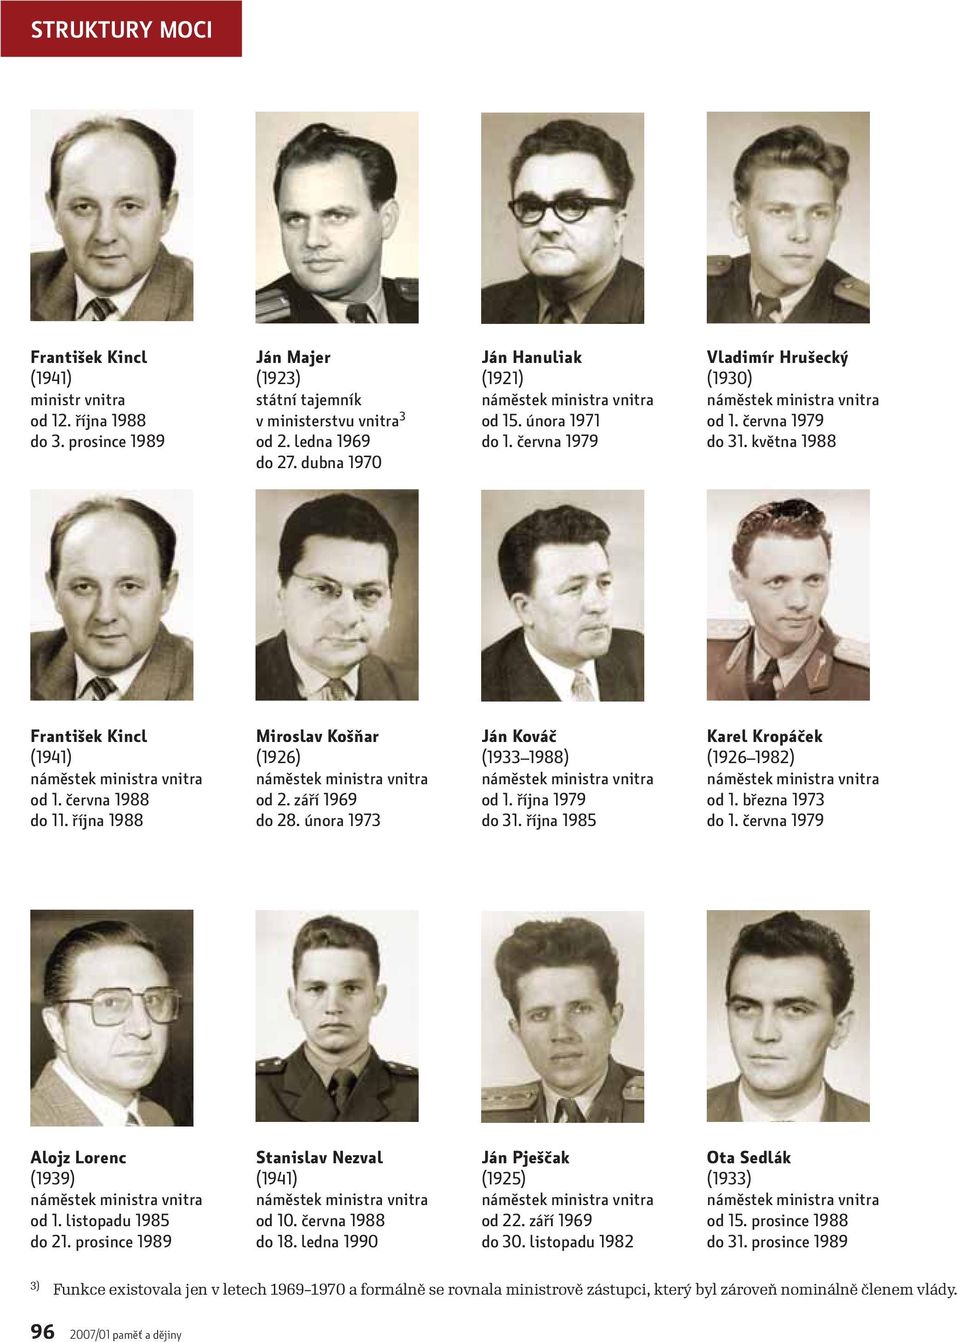 října 1988 Miroslav Košňar (1926) od 2. září 1969 do 28. února 1973 Ján Kováč (1933 1988) od 1. října 1979 do 31. října 1985 Karel Kropáček (1926 1982) od 1. března 1973 do 1.